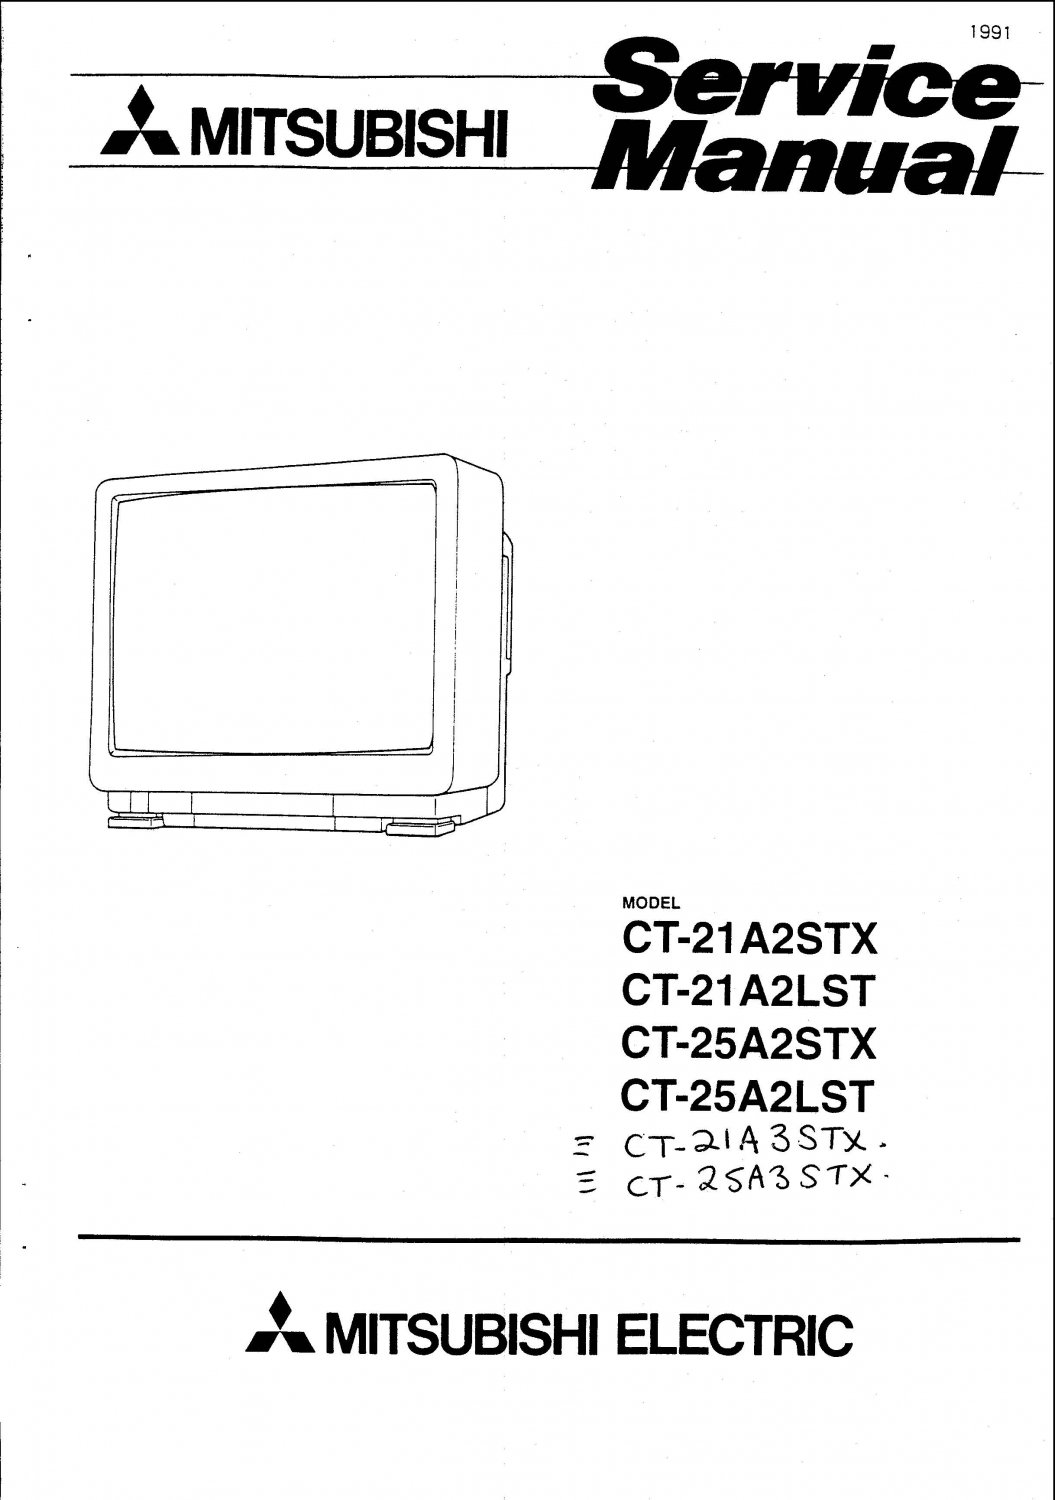 Mitsubishi Tv Repair Manual Free